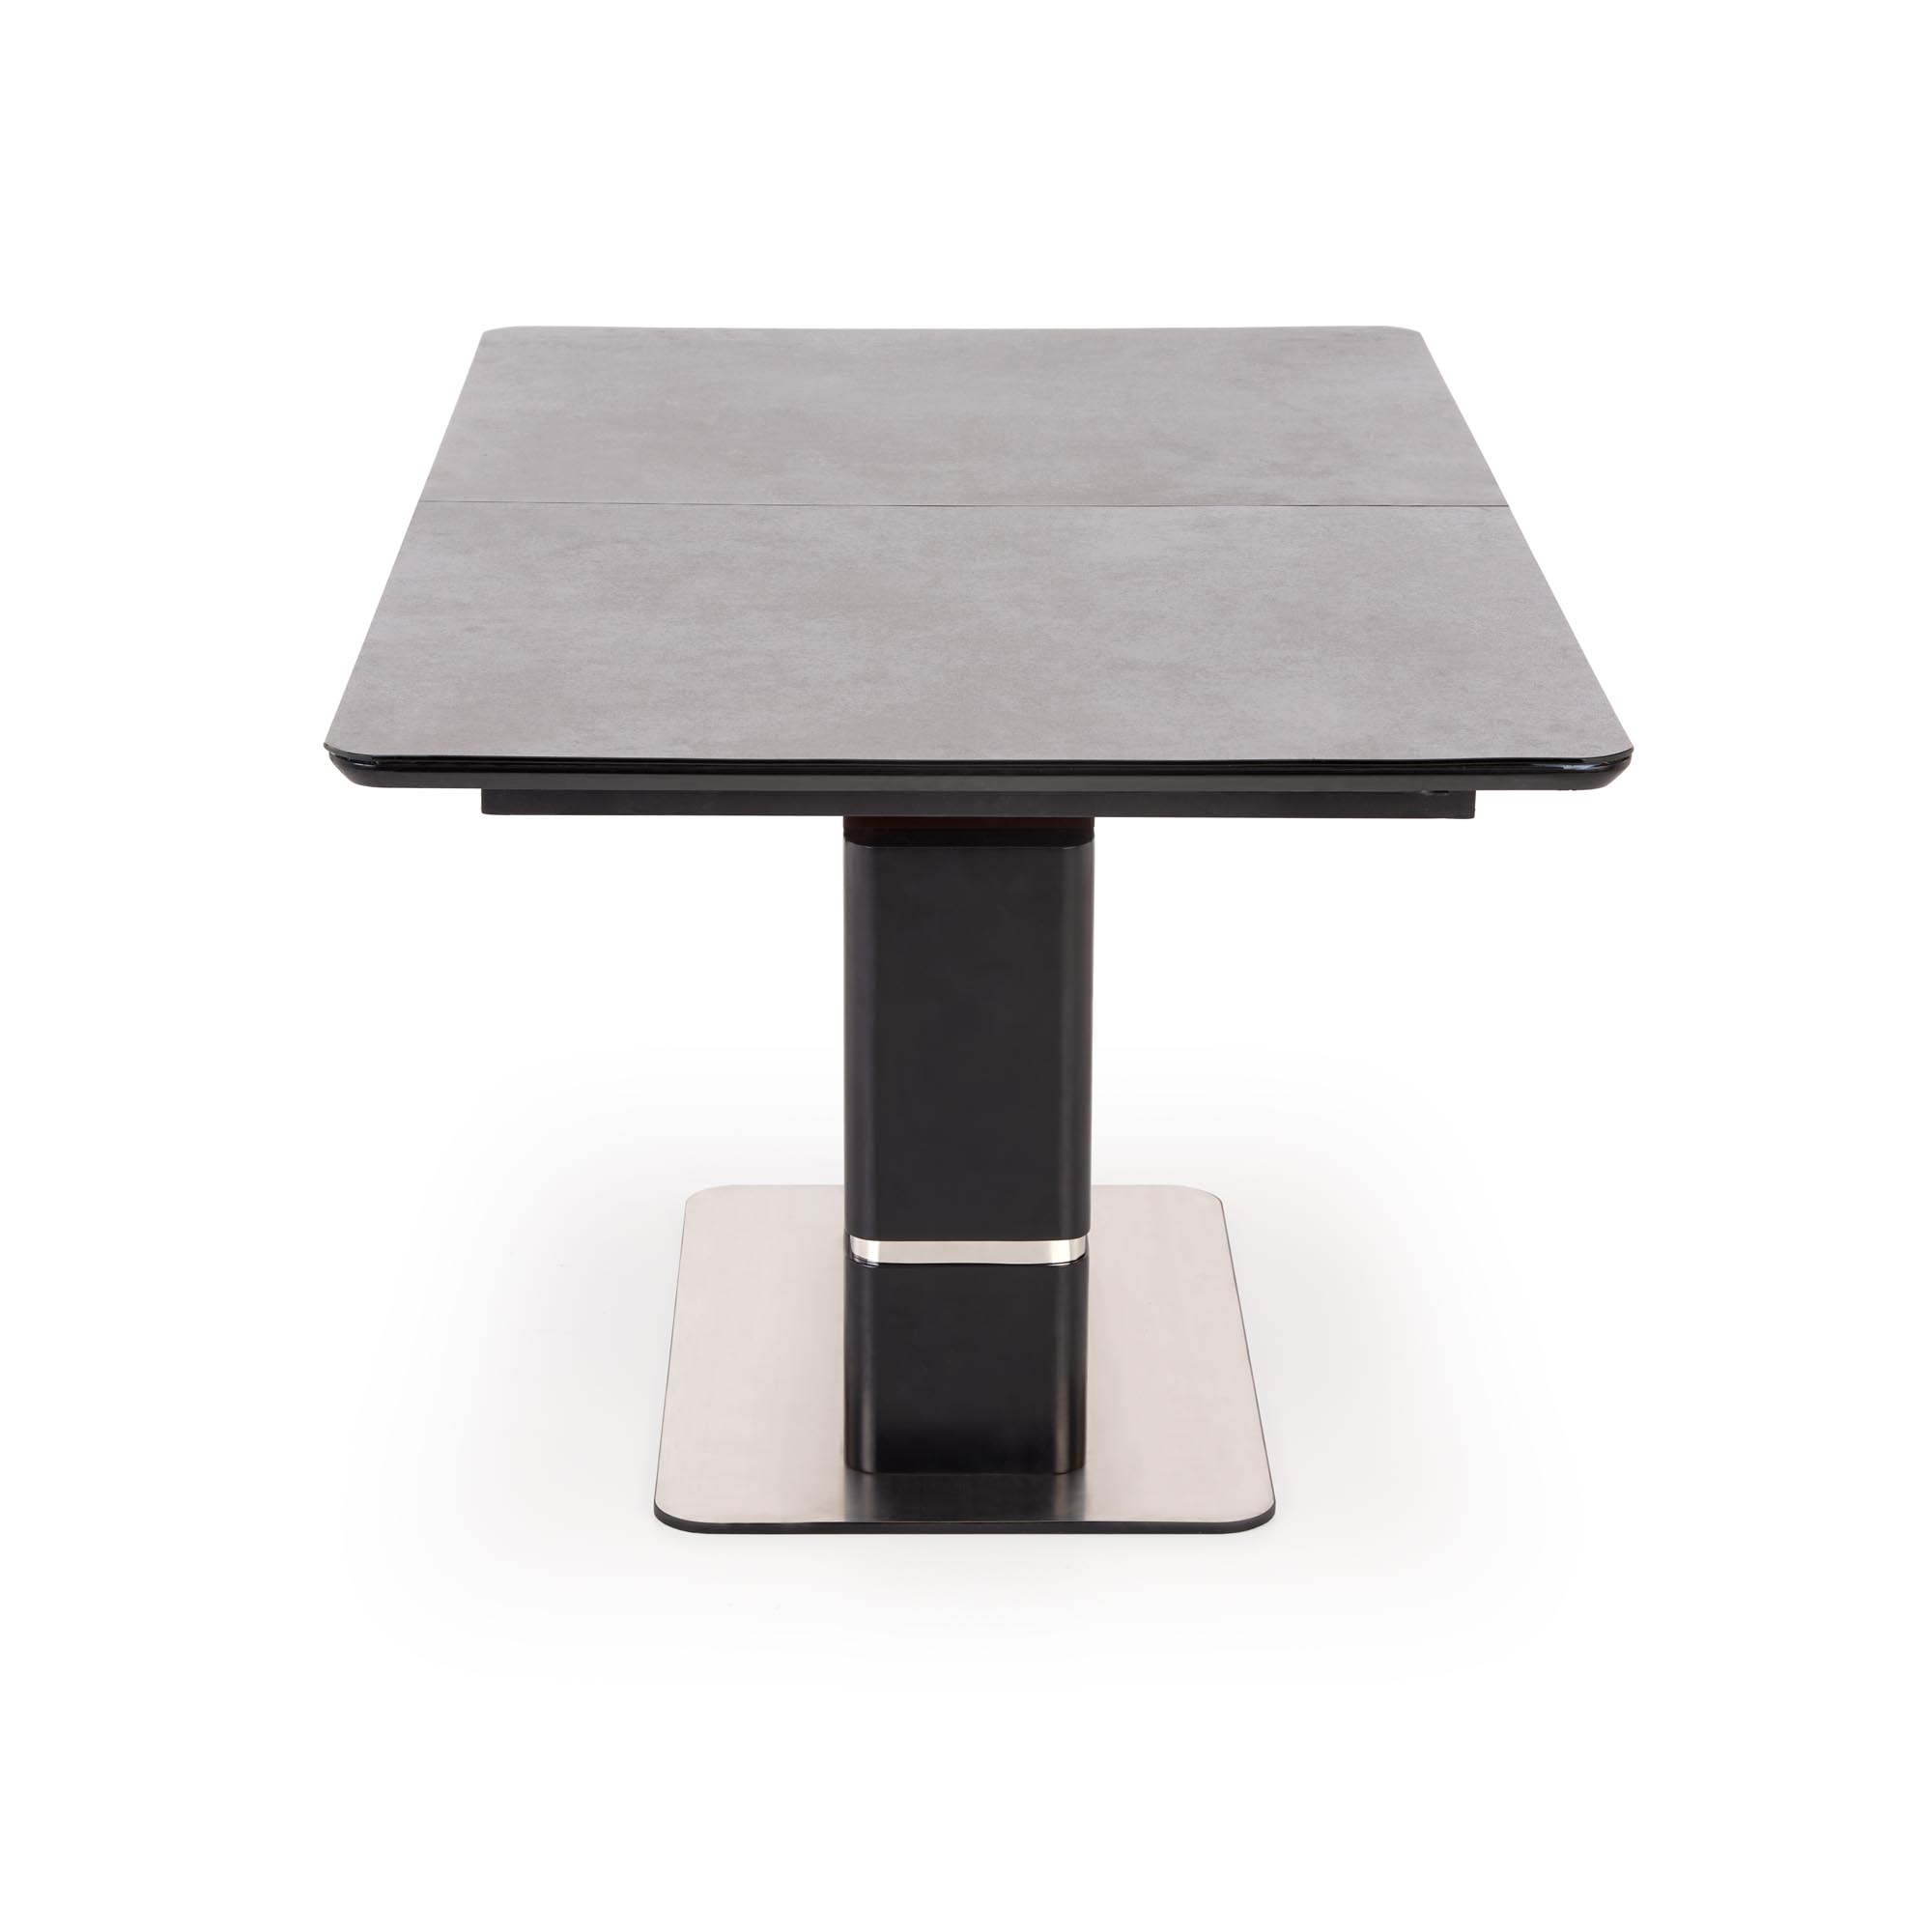 MARTIN Stůl rozkládací Deska - tmavý popel, noga - Černý martin stůl rozkládací Deska - tmavý popel, noga - Černý